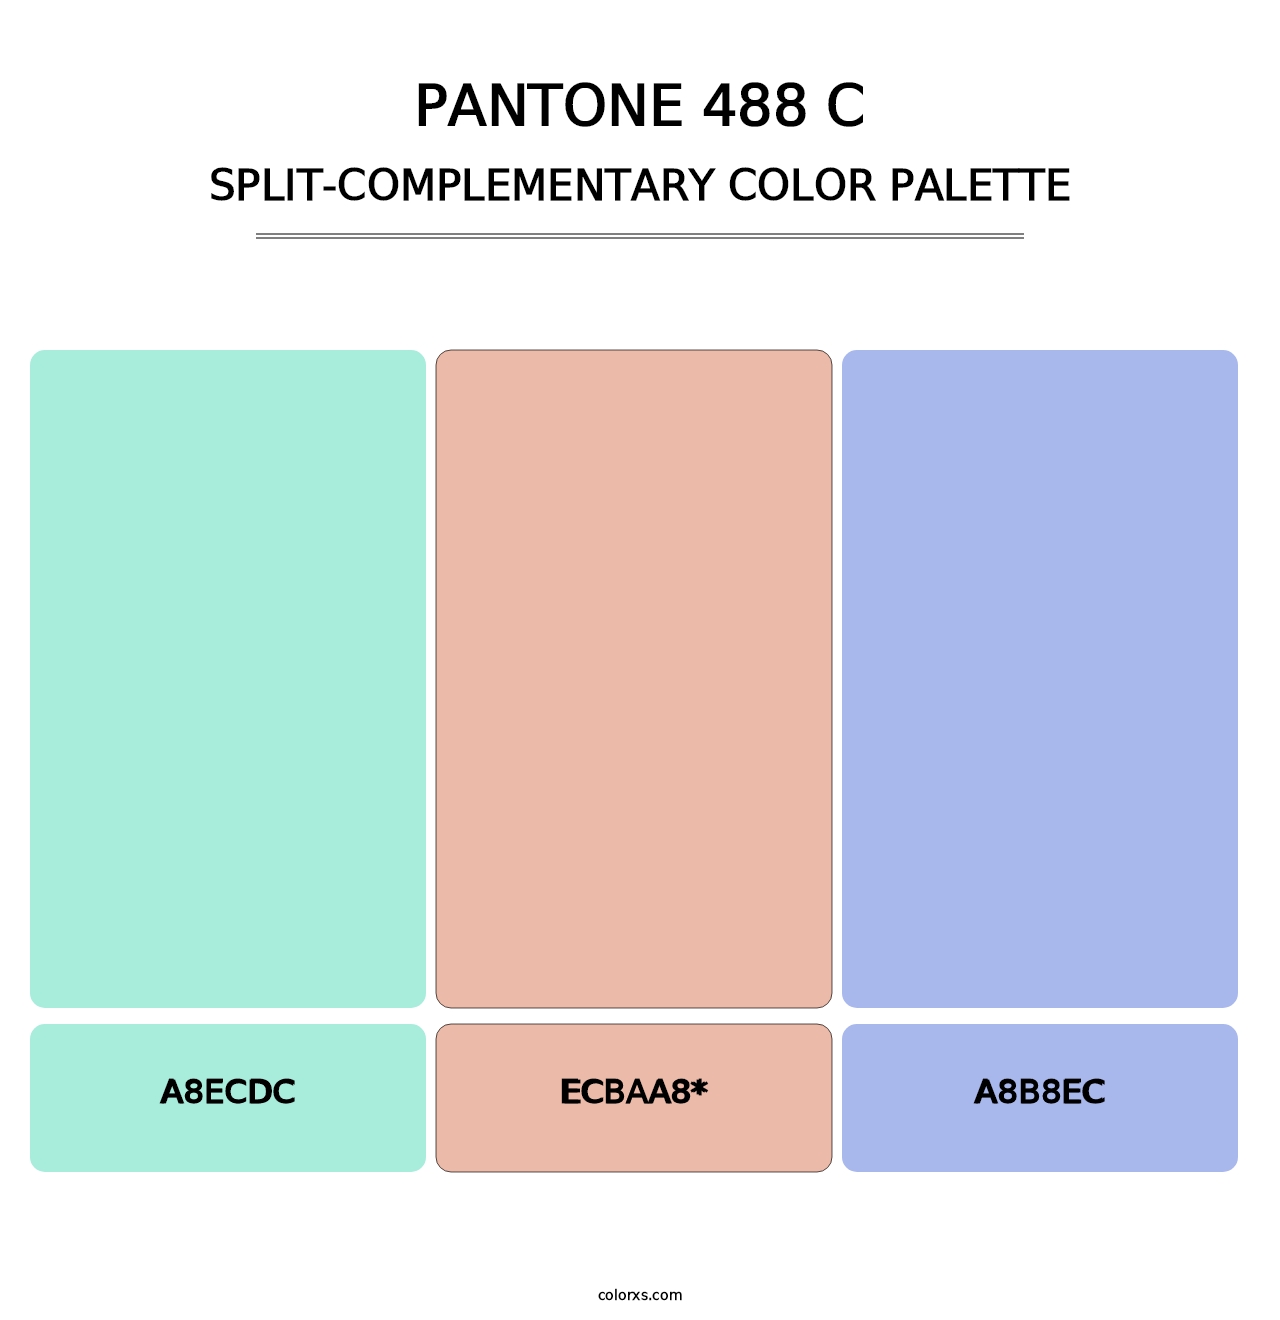 PANTONE 488 C - Split-Complementary Color Palette